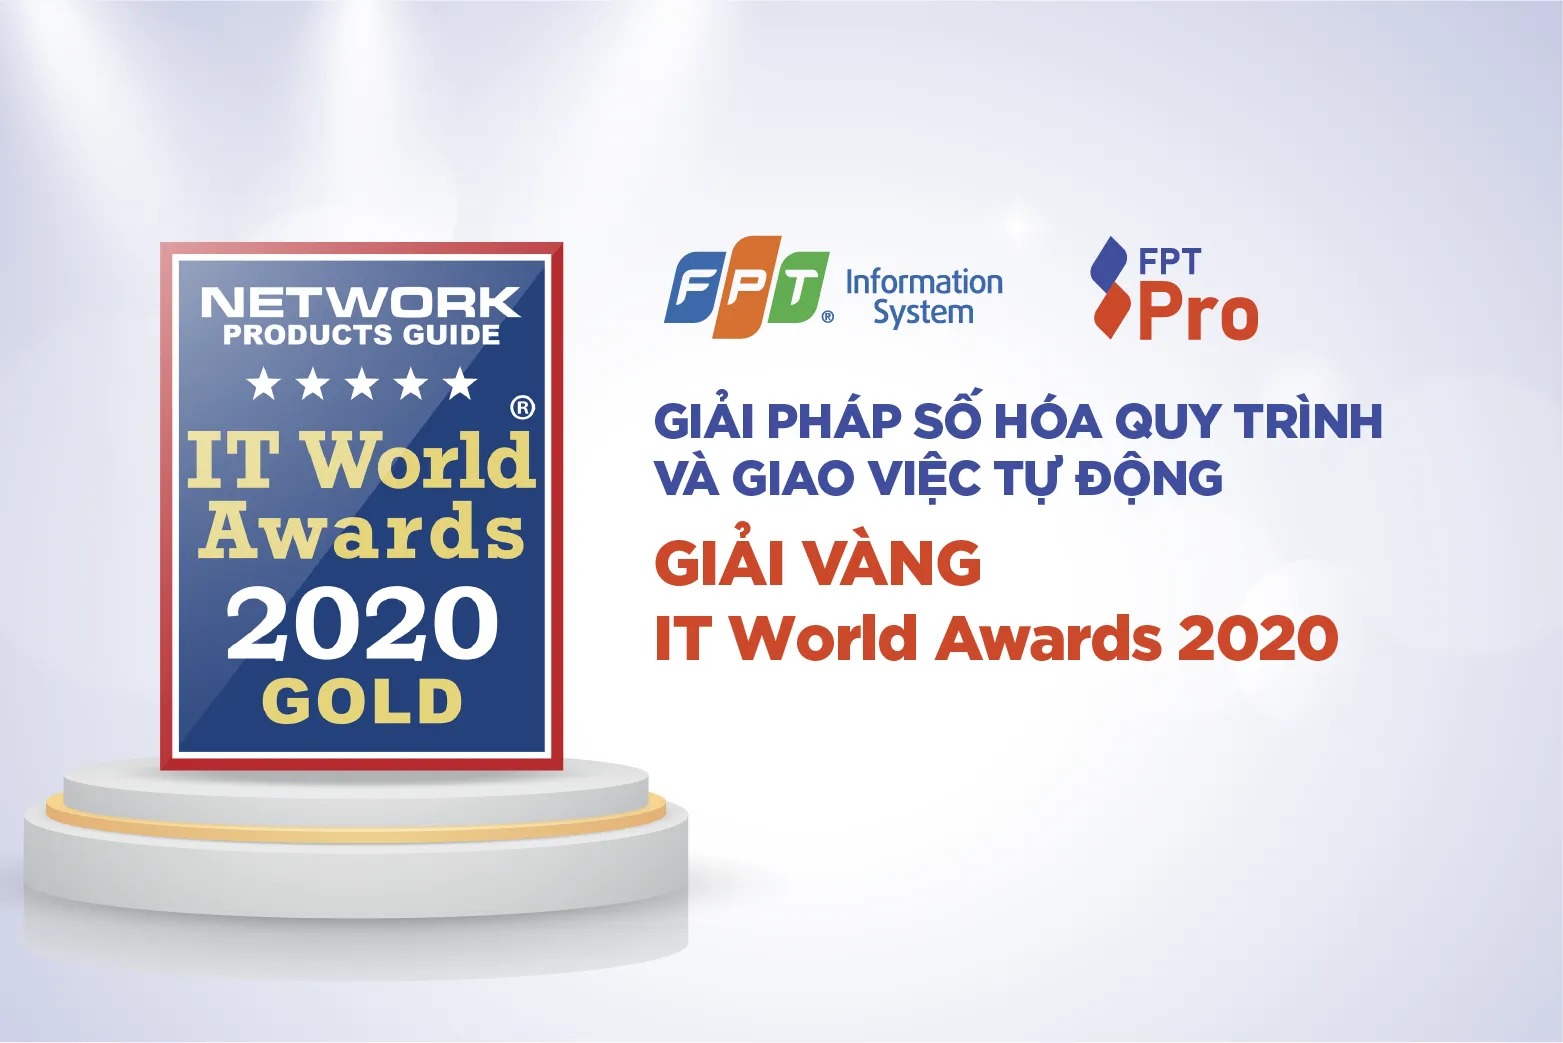 Giải pháp số hóa quy trình và giao việc tự động cho doanh nghiệp – FPT SPro đạt Giải Vàng – Giải thưởng IT World Awards 2020